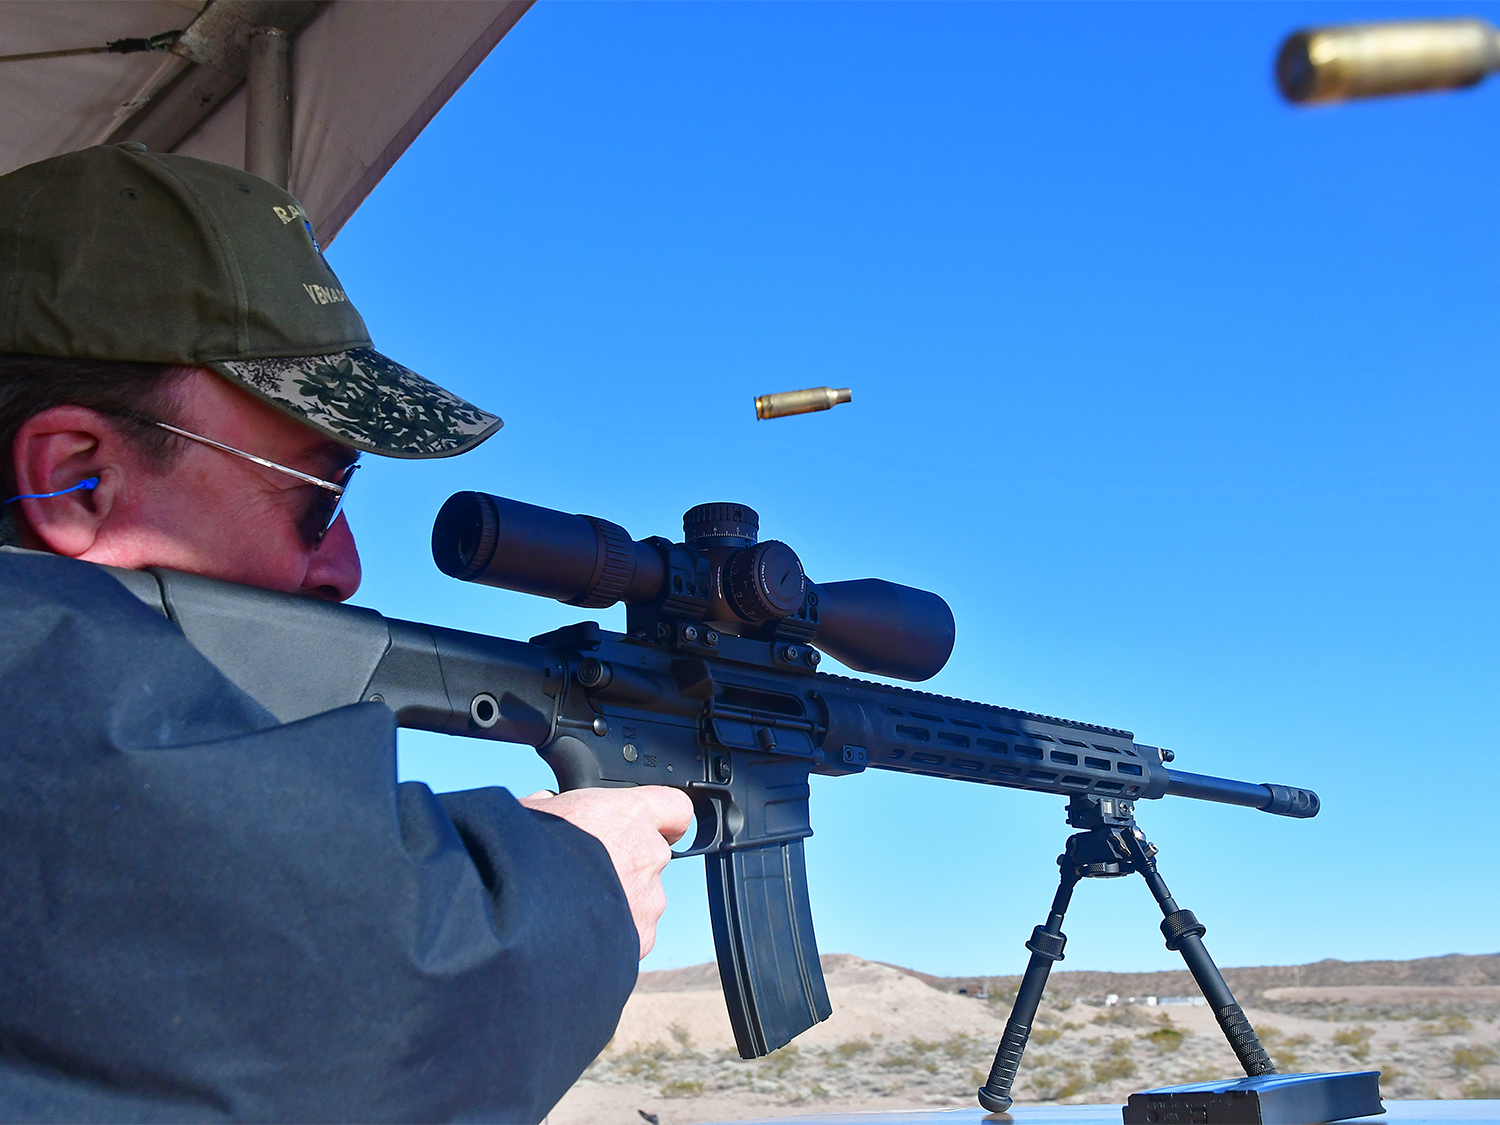 A hunter aiming a rifle at a shooting range.